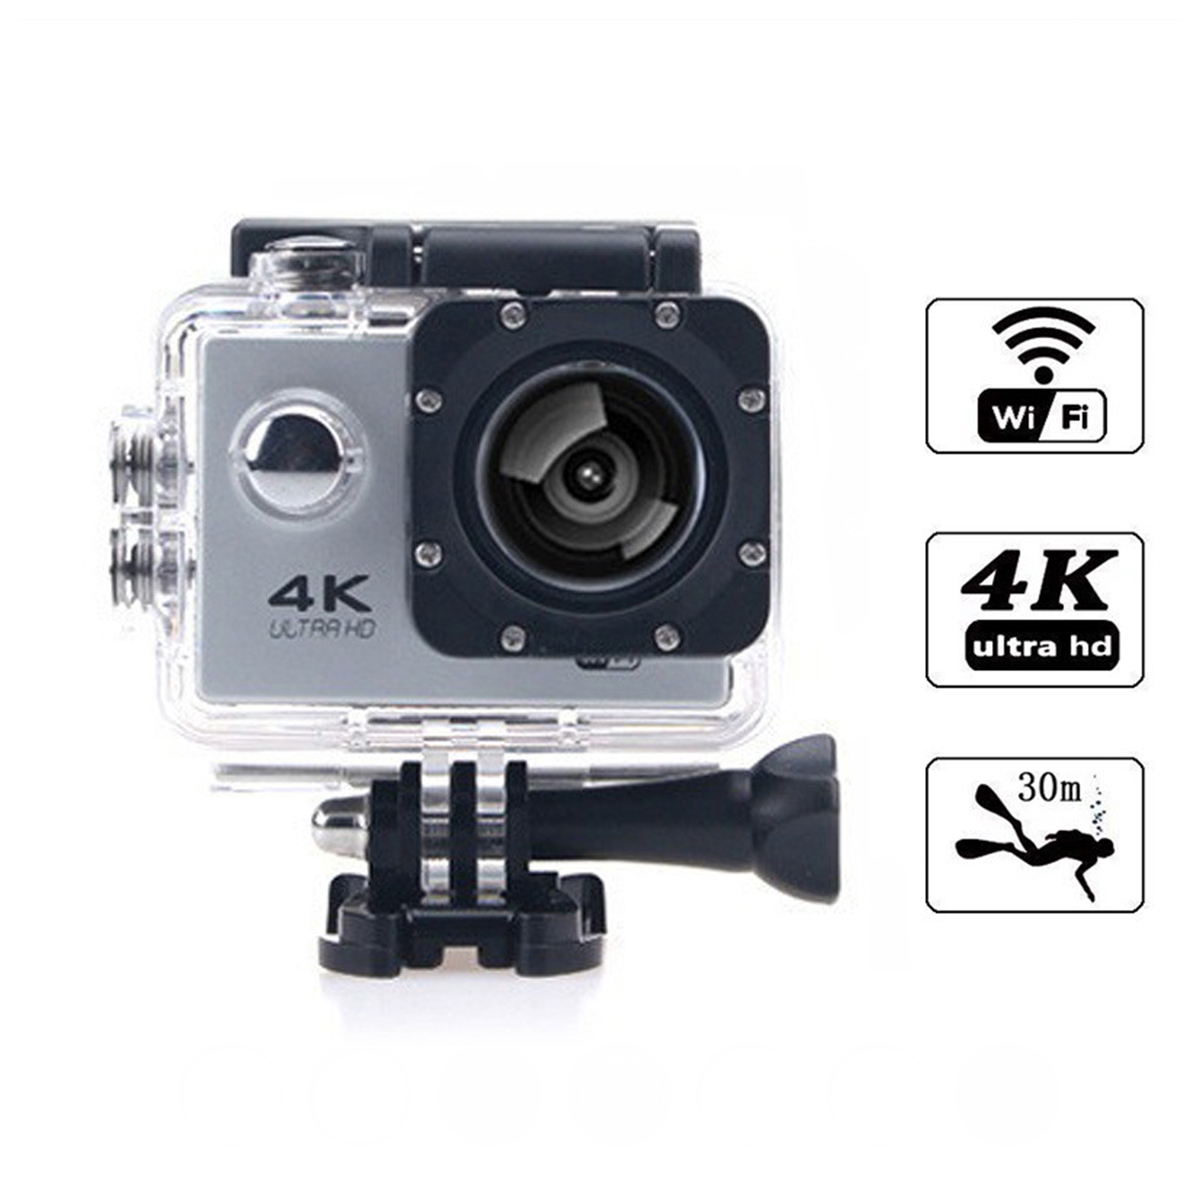 KINSI 4K-Sportkameras,WiFi-Synchronisation,30m Action-Kamera wasserdicht,HD-Kameras,Unterwasserkameras